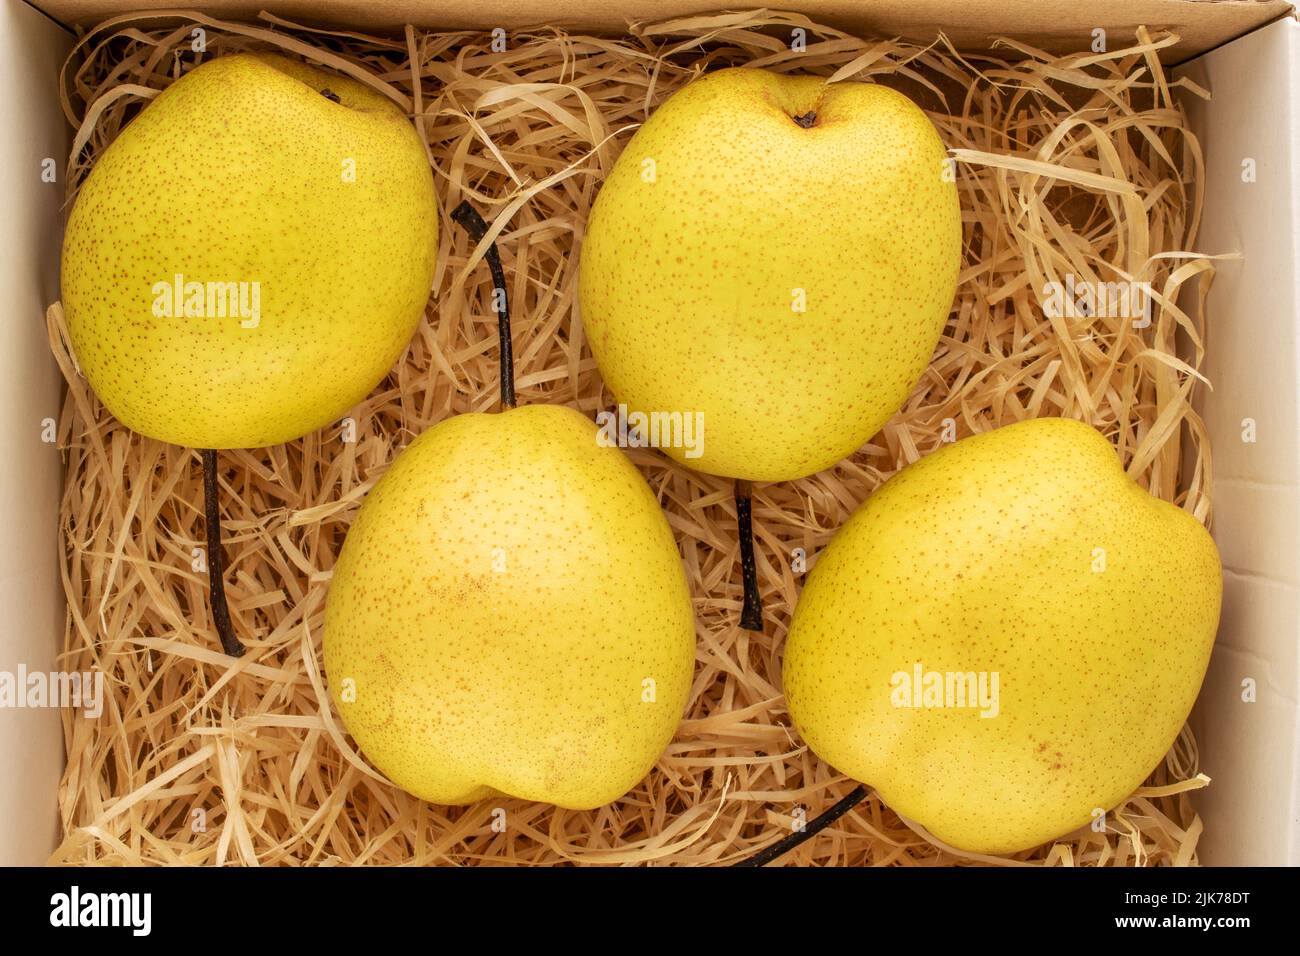 Quatre poires jaune vif dans une boîte avec copeaux de bois, vue rapprochée, vue de dessus. Banque D'Images